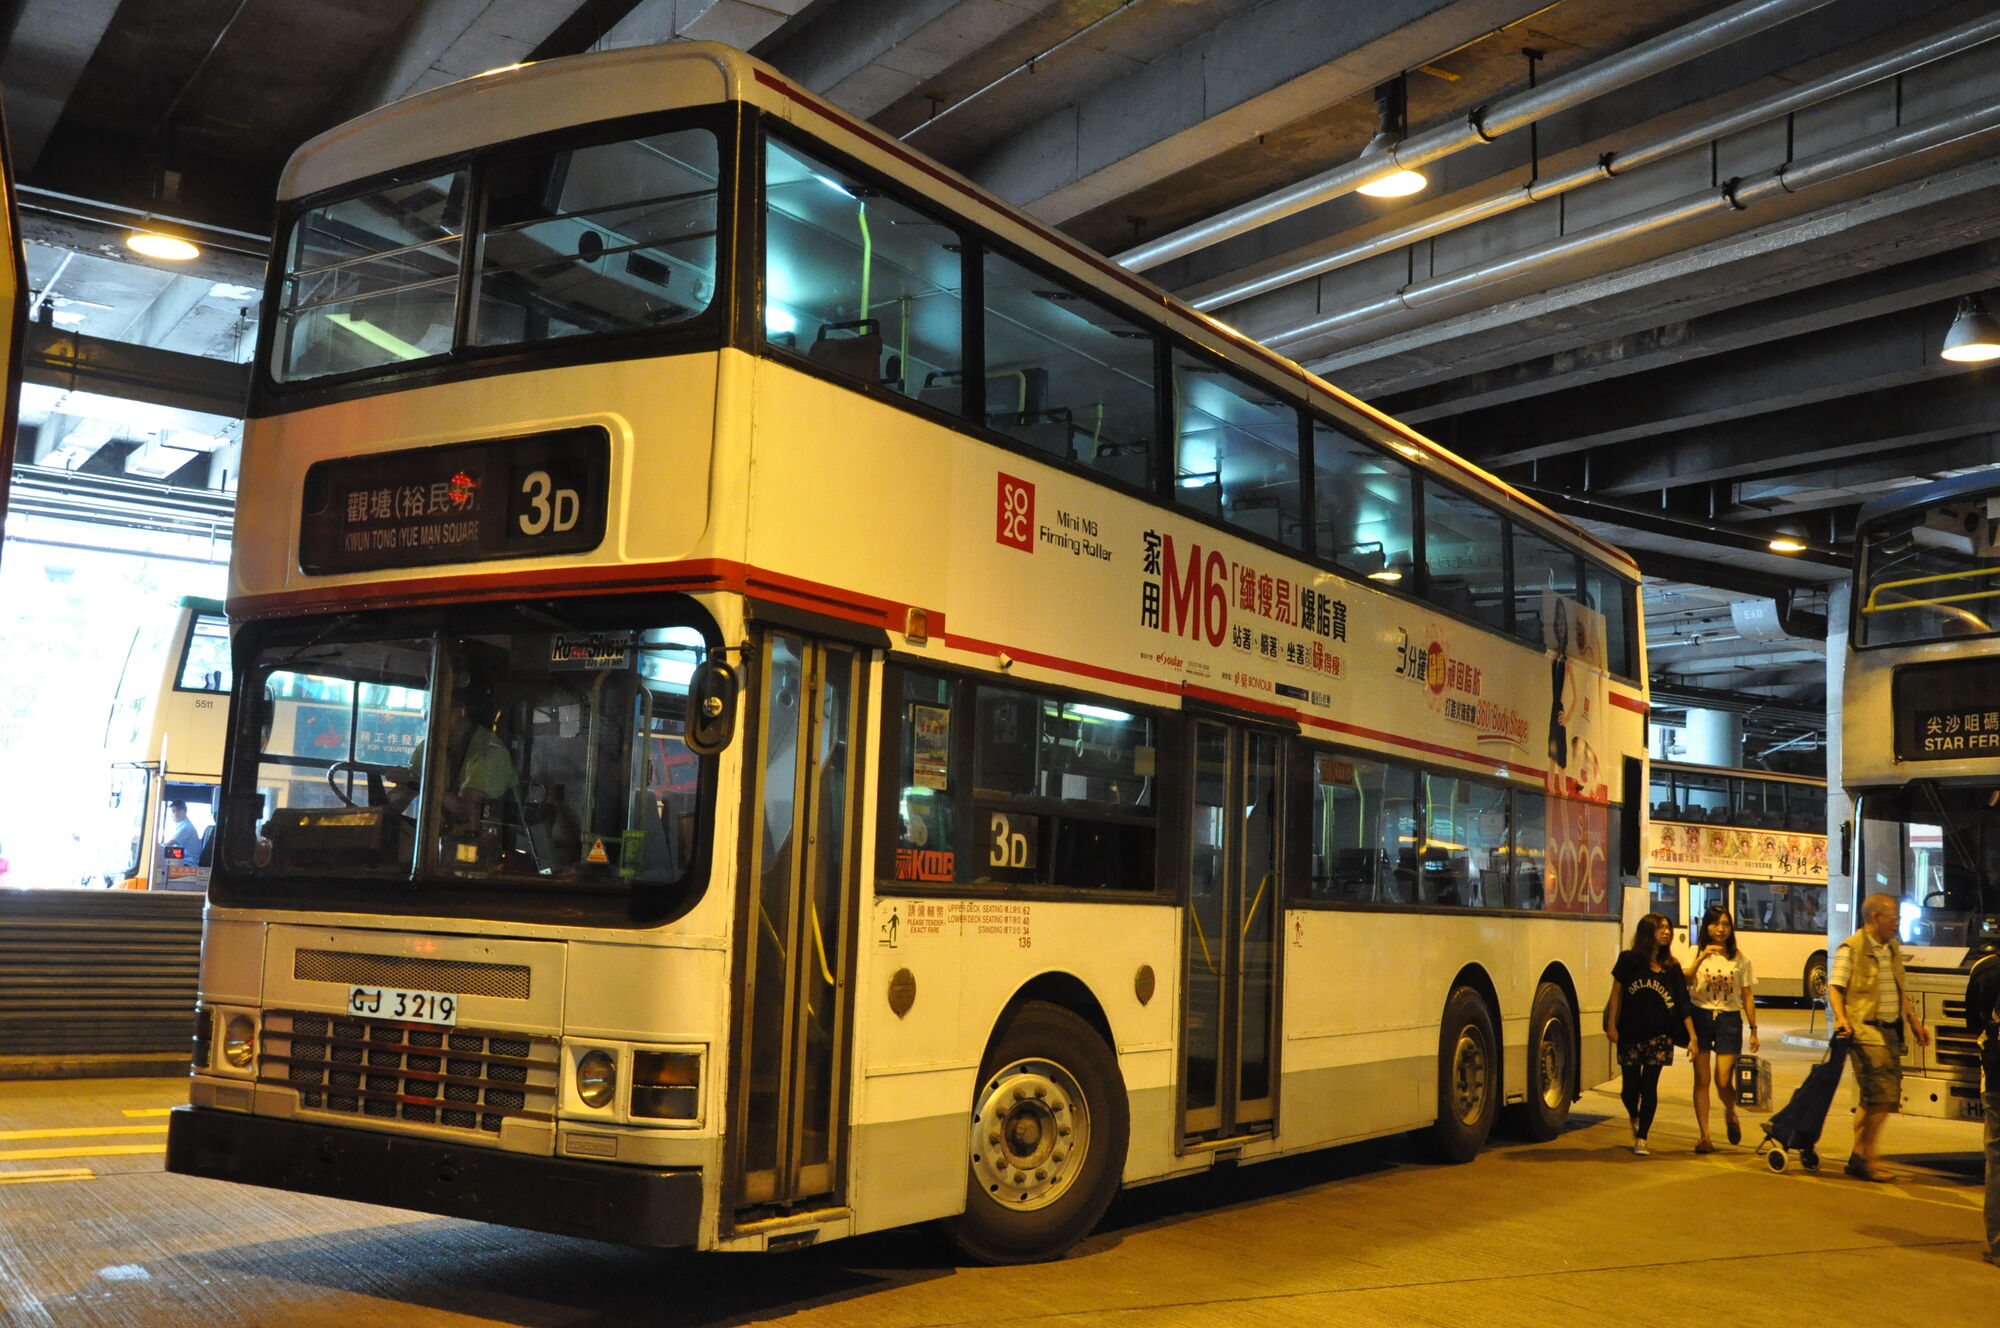 無聊影70K - 巴士攝影作品貼圖區 (B3) - hkitalk.net 香港交通資訊網 - Powered by Discuz!